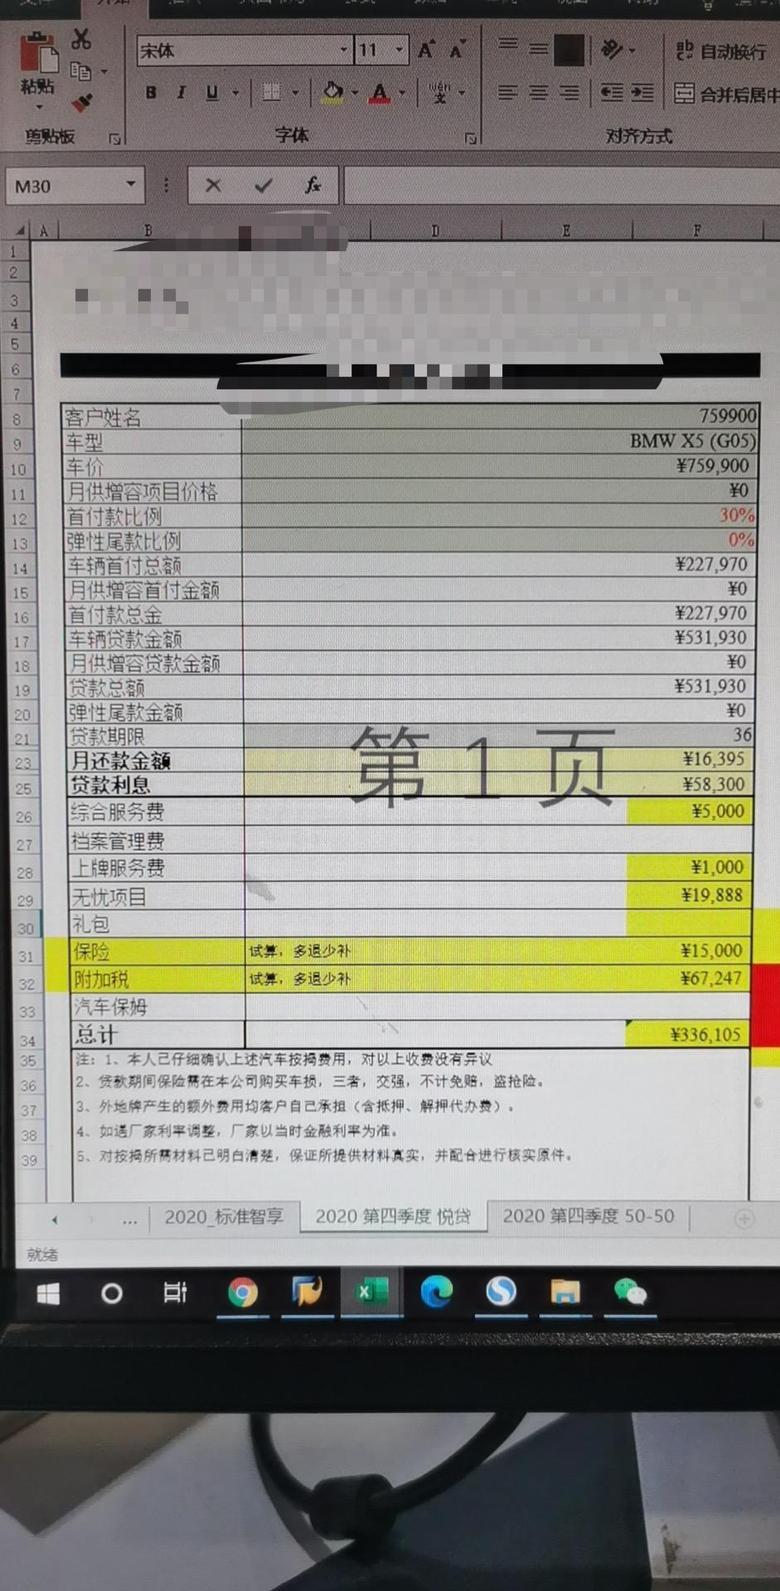 宝马x5(进口) 这个价格怎么样？坐标浙江温州。强女干19888，送6年机油免工时，3年三大件延保。没了。大家帮我看一下，准备下手。